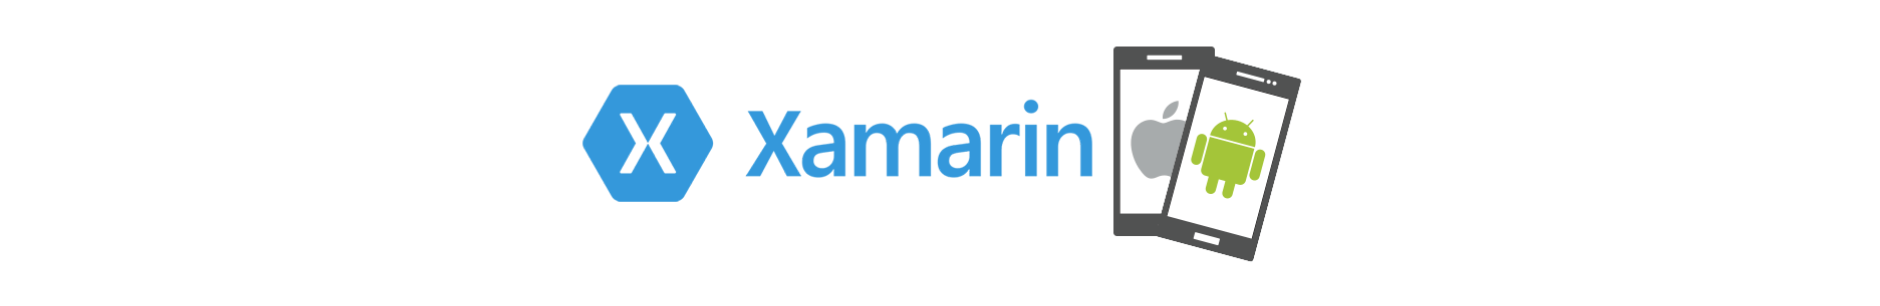 xamarin-framework-logo